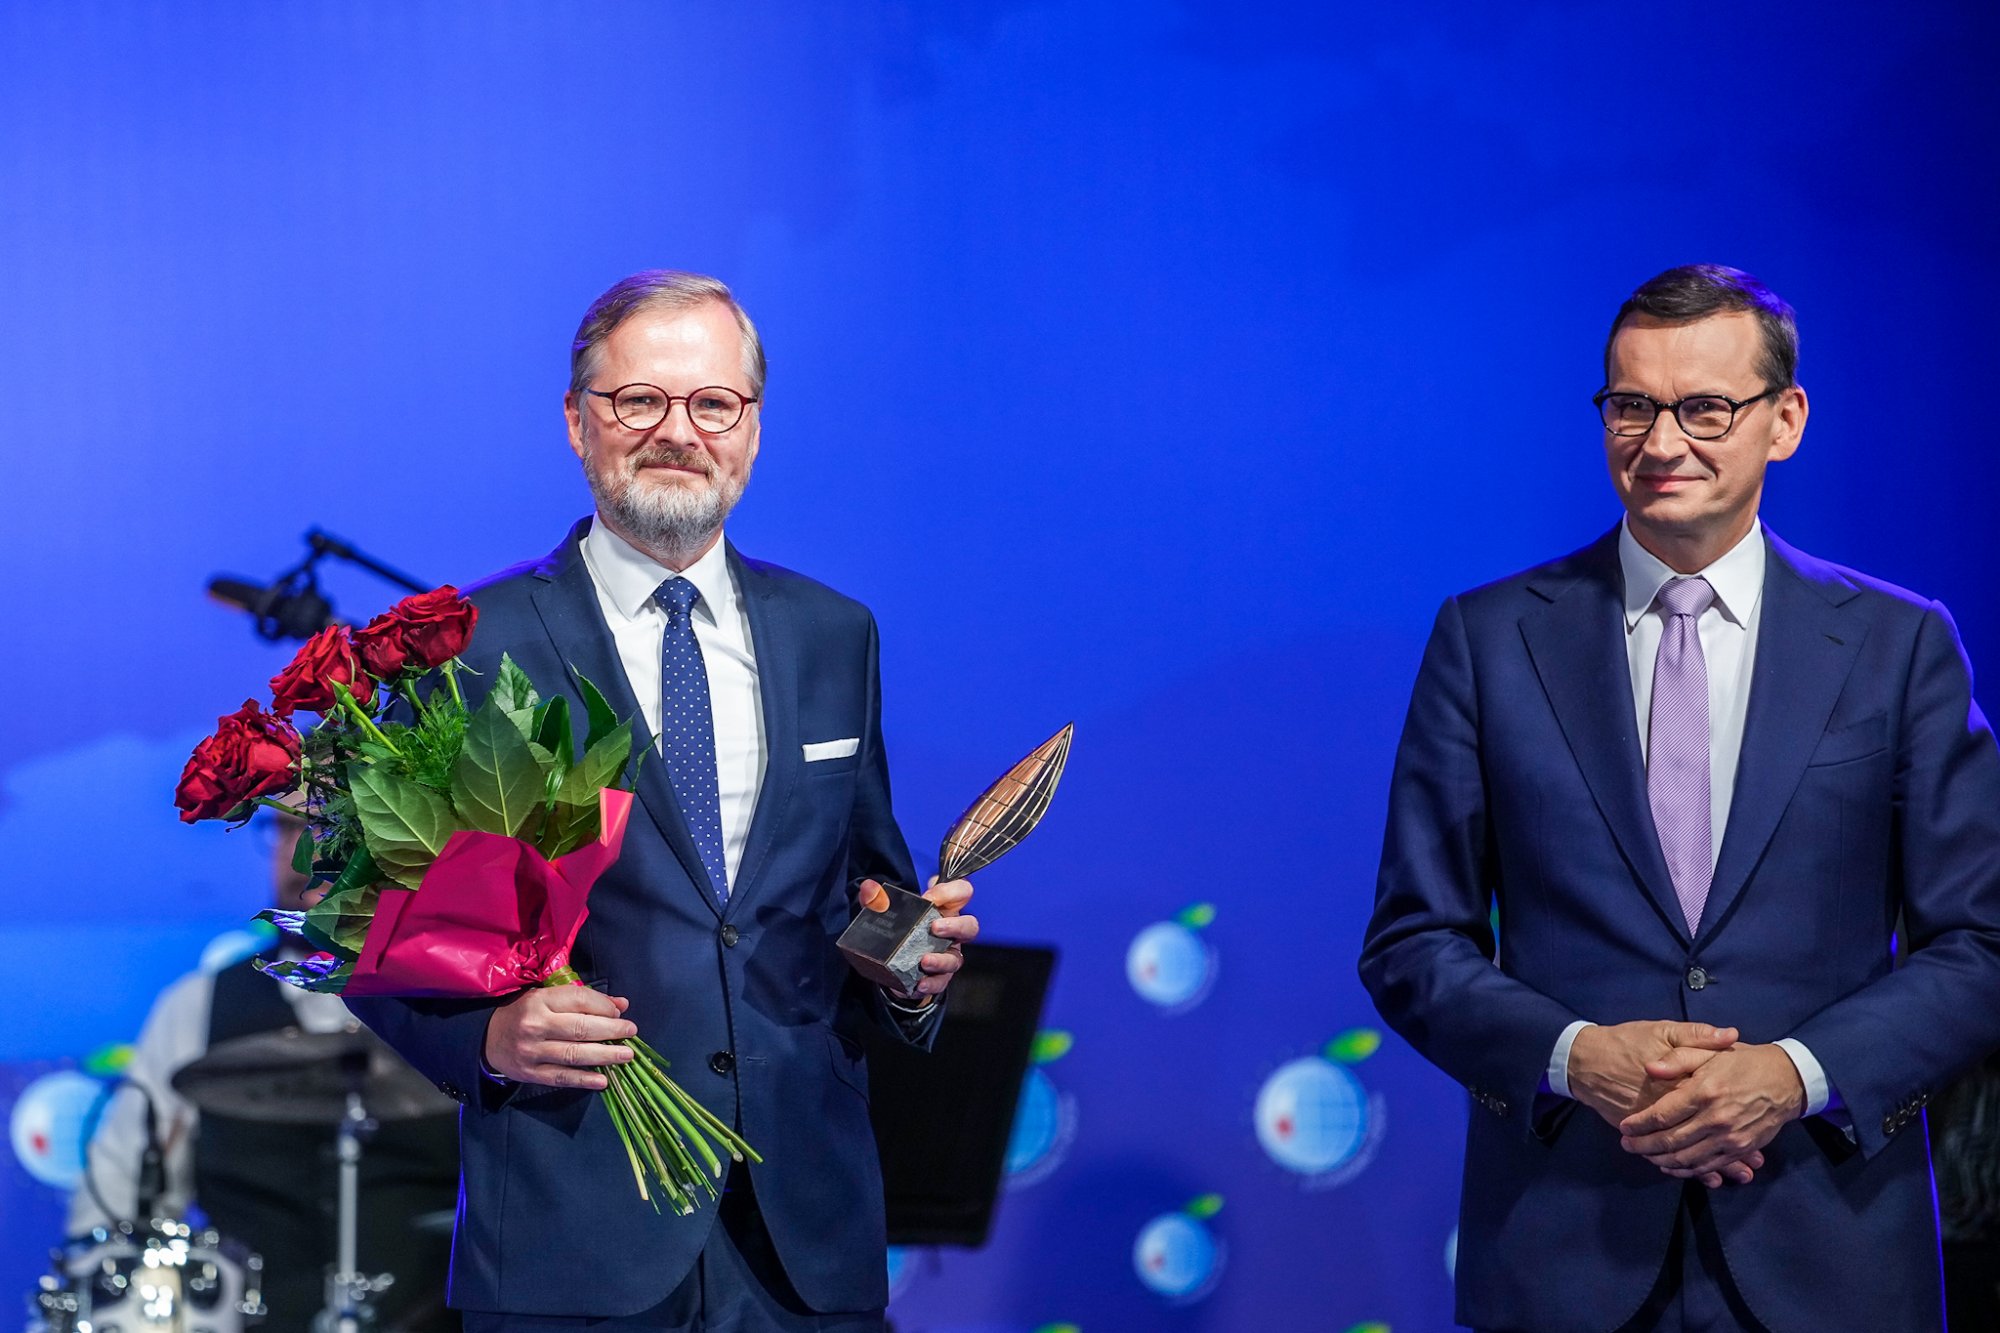 Premiér Fiala se v polské Karpaczi zúčastnil Ekonomického fóra a obdržel cenu Člověk roku